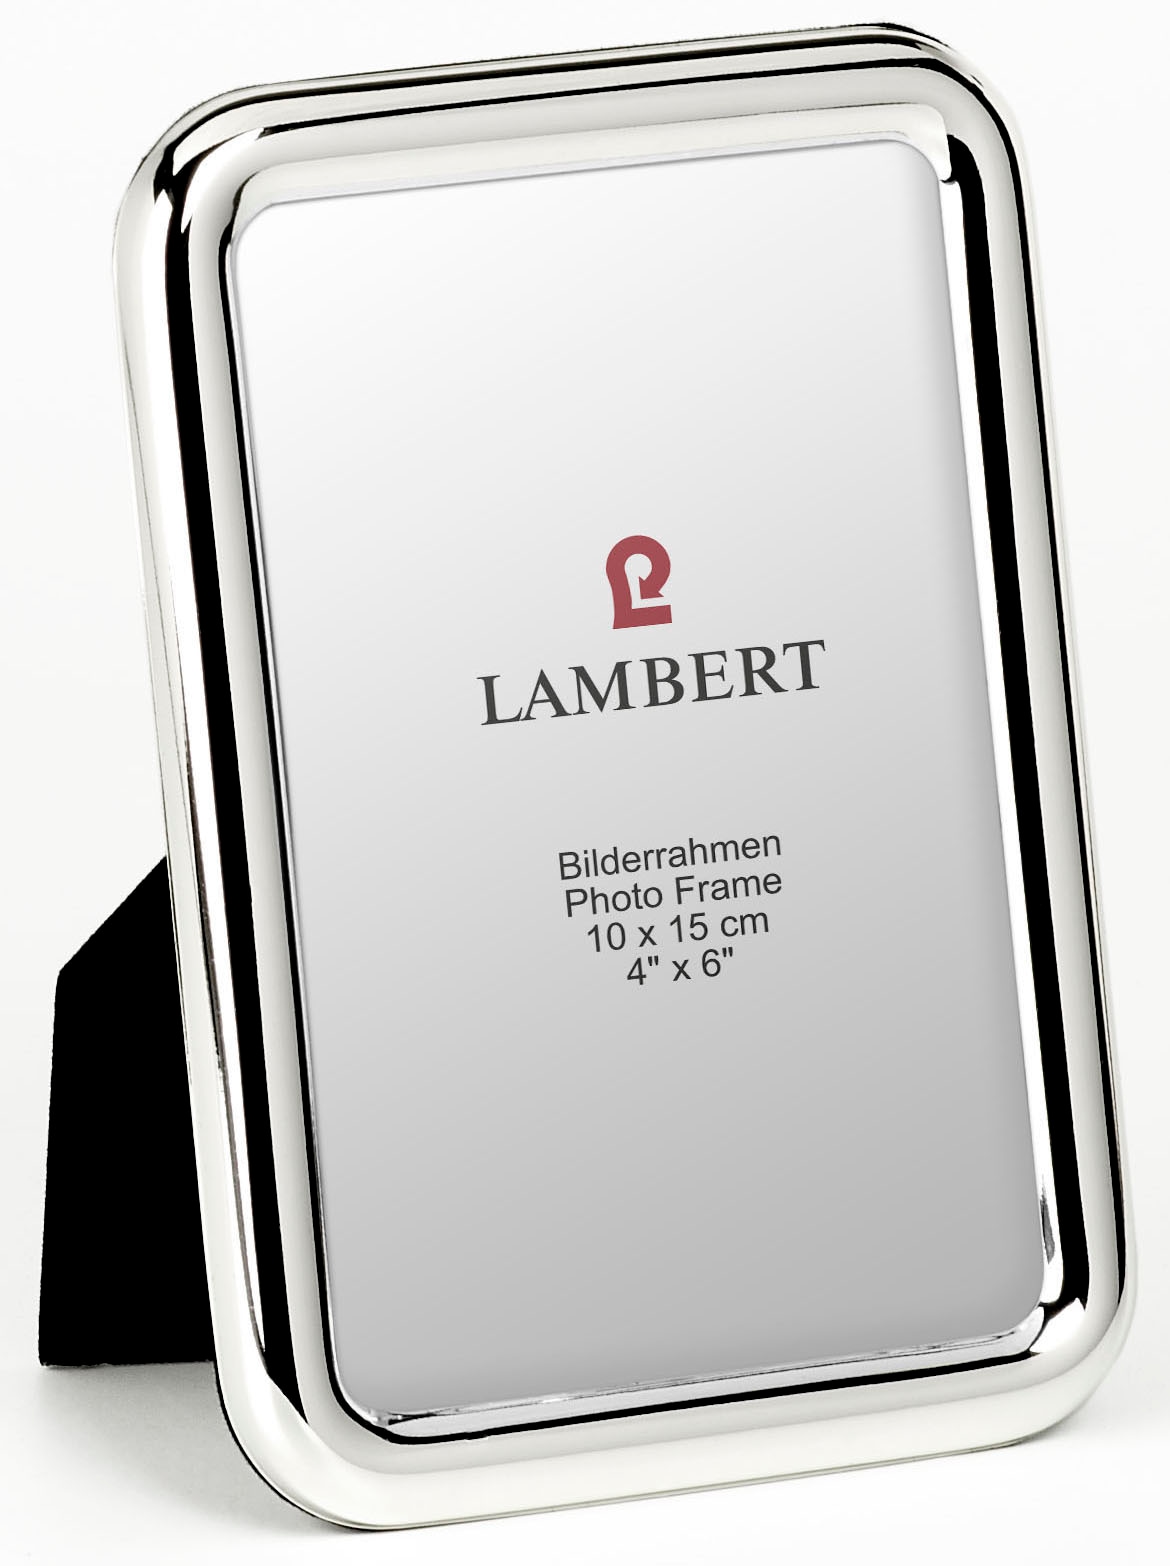 ♕ Lambert jetzt versandkostenfrei Schweiz bestellen bei Ackermann